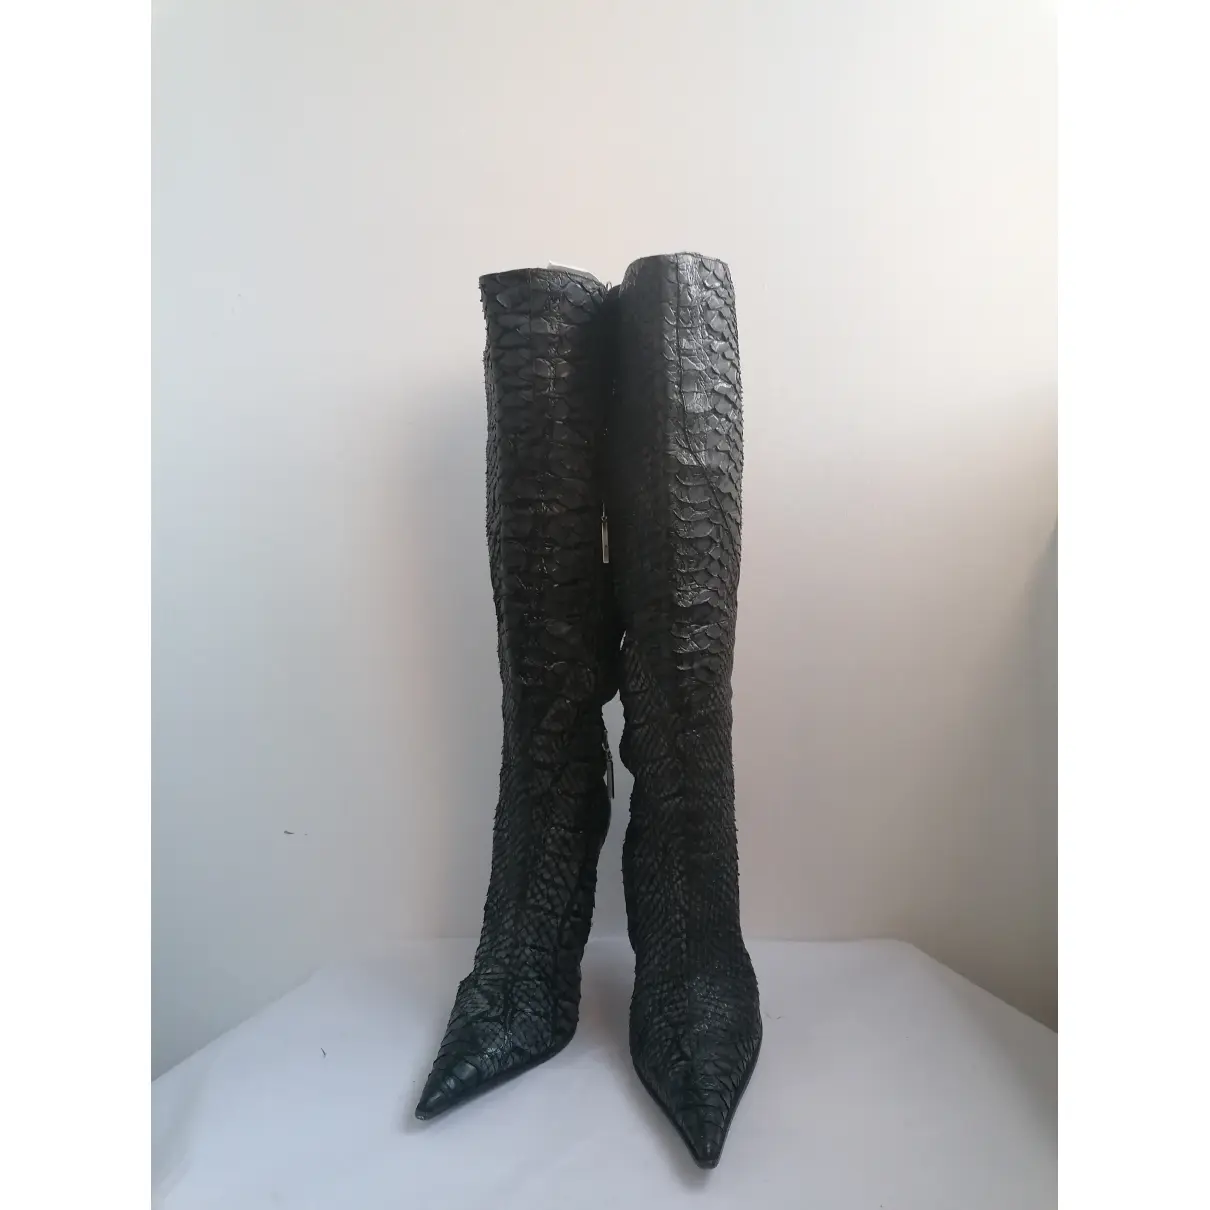 Buy Gianmarco Lorenzi Leather boots online